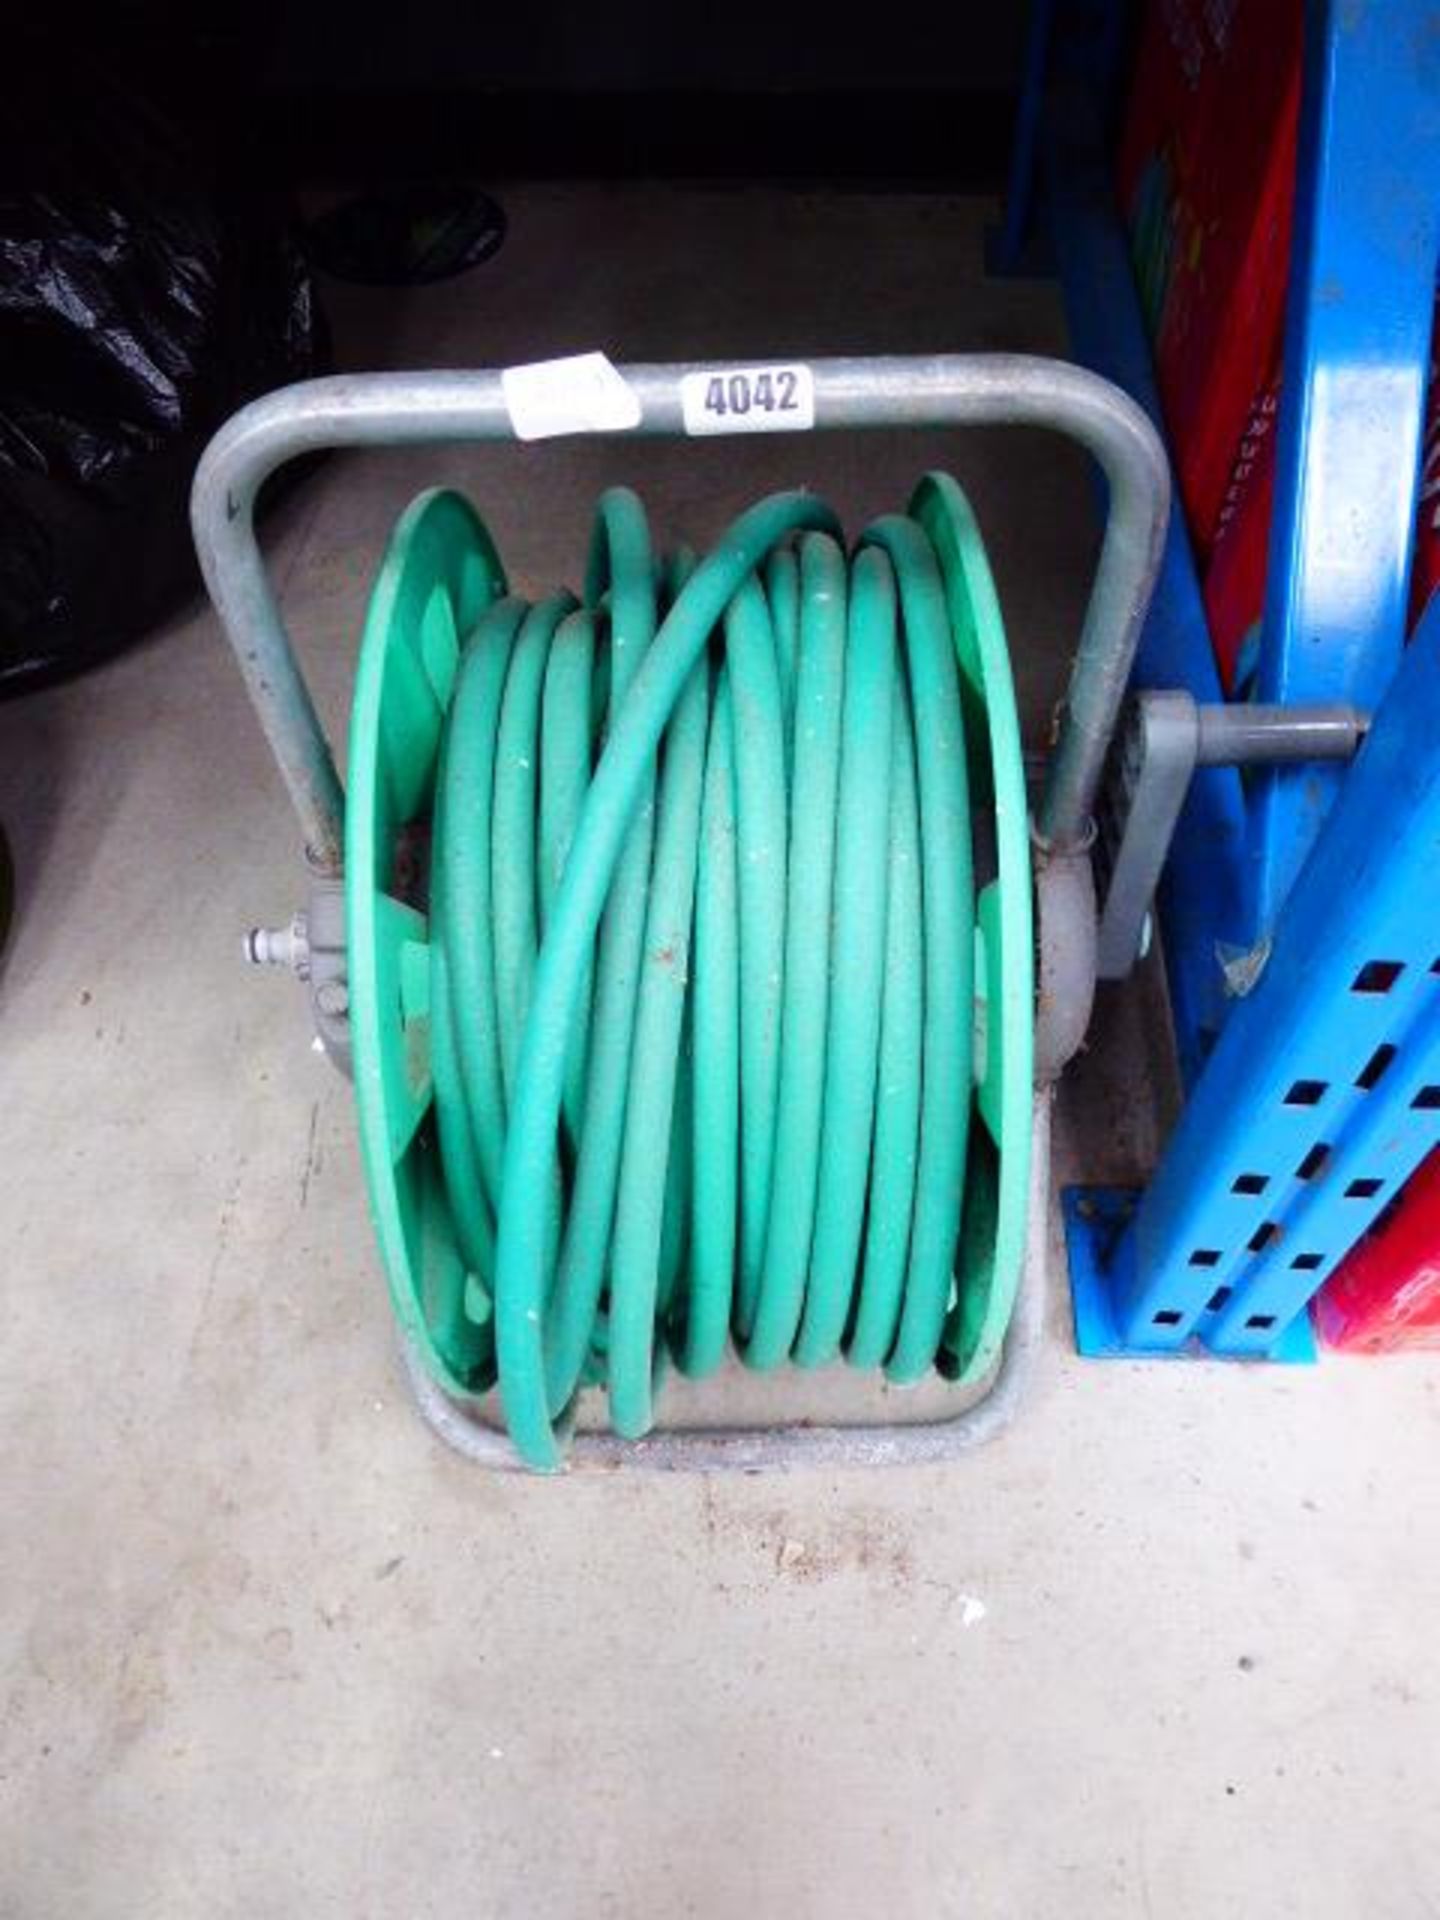 Hose and hose reel